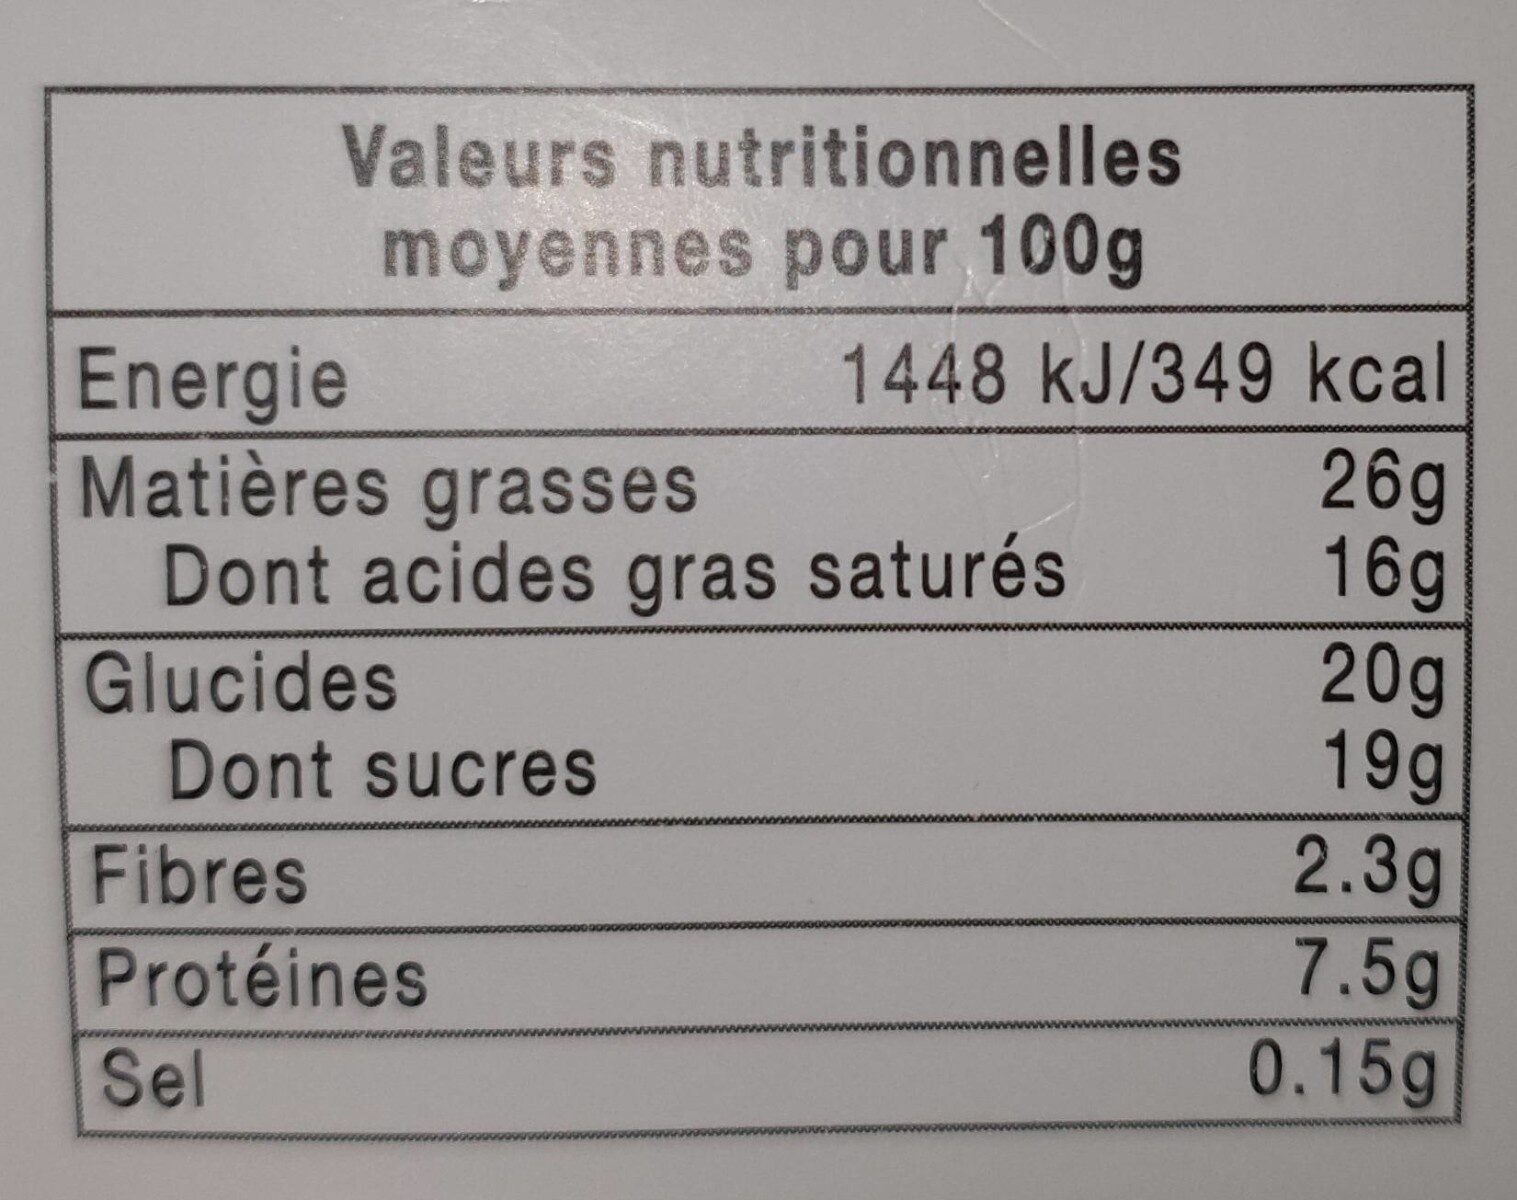 mousse au chocolat - Nutrition facts - fr